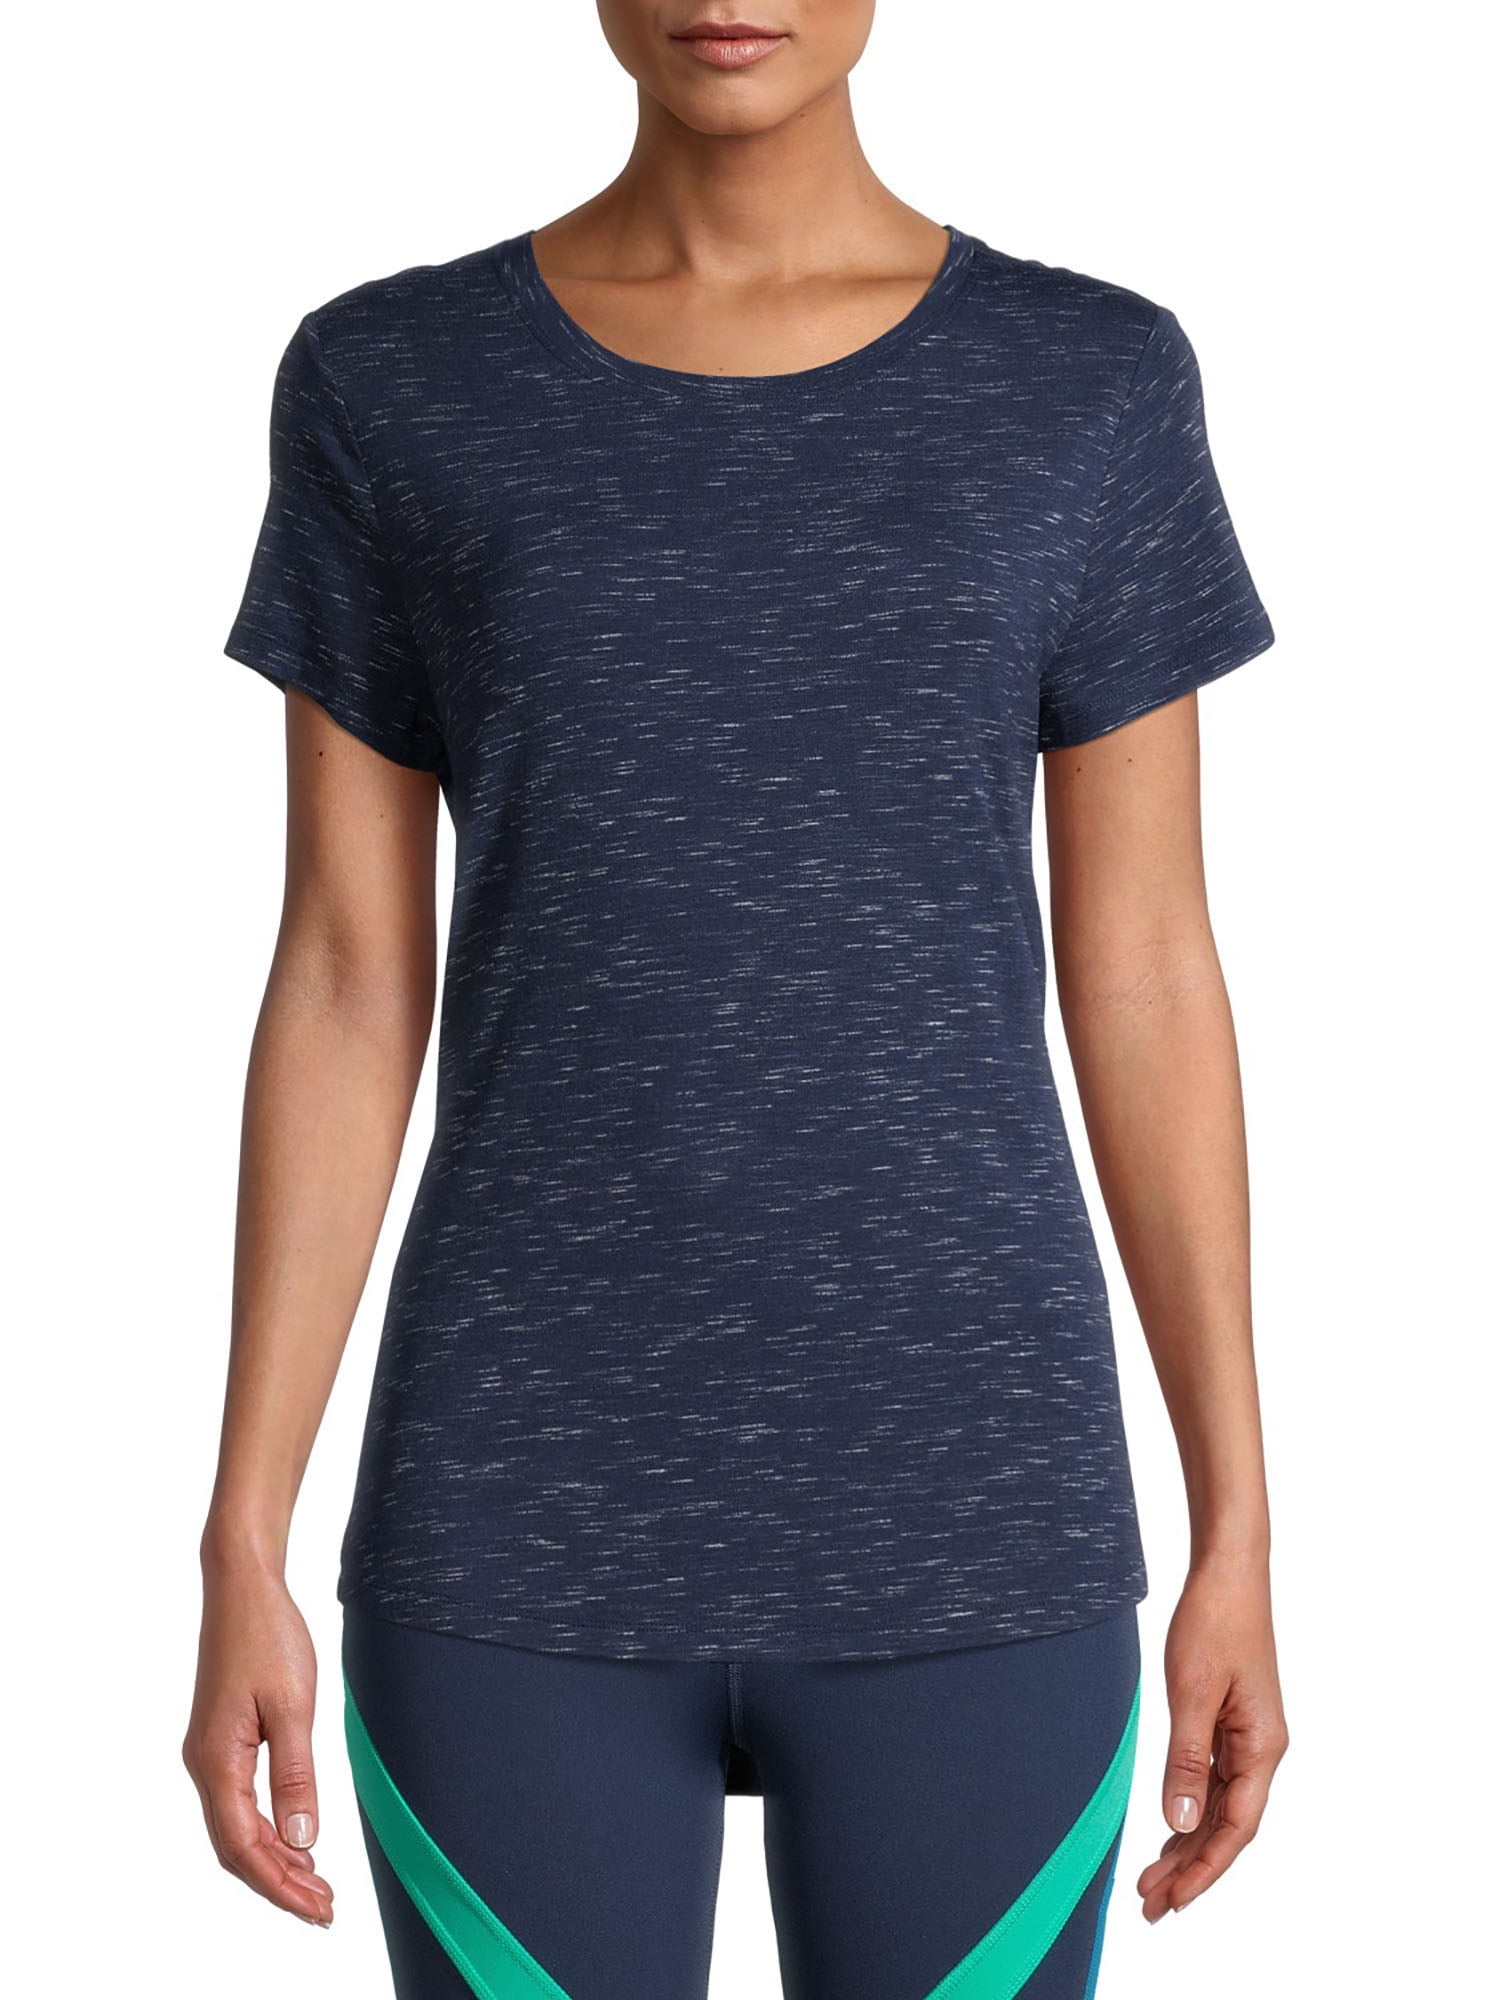 Avia Women's Athleisure Commuter Short Sleeve T-Shirt 